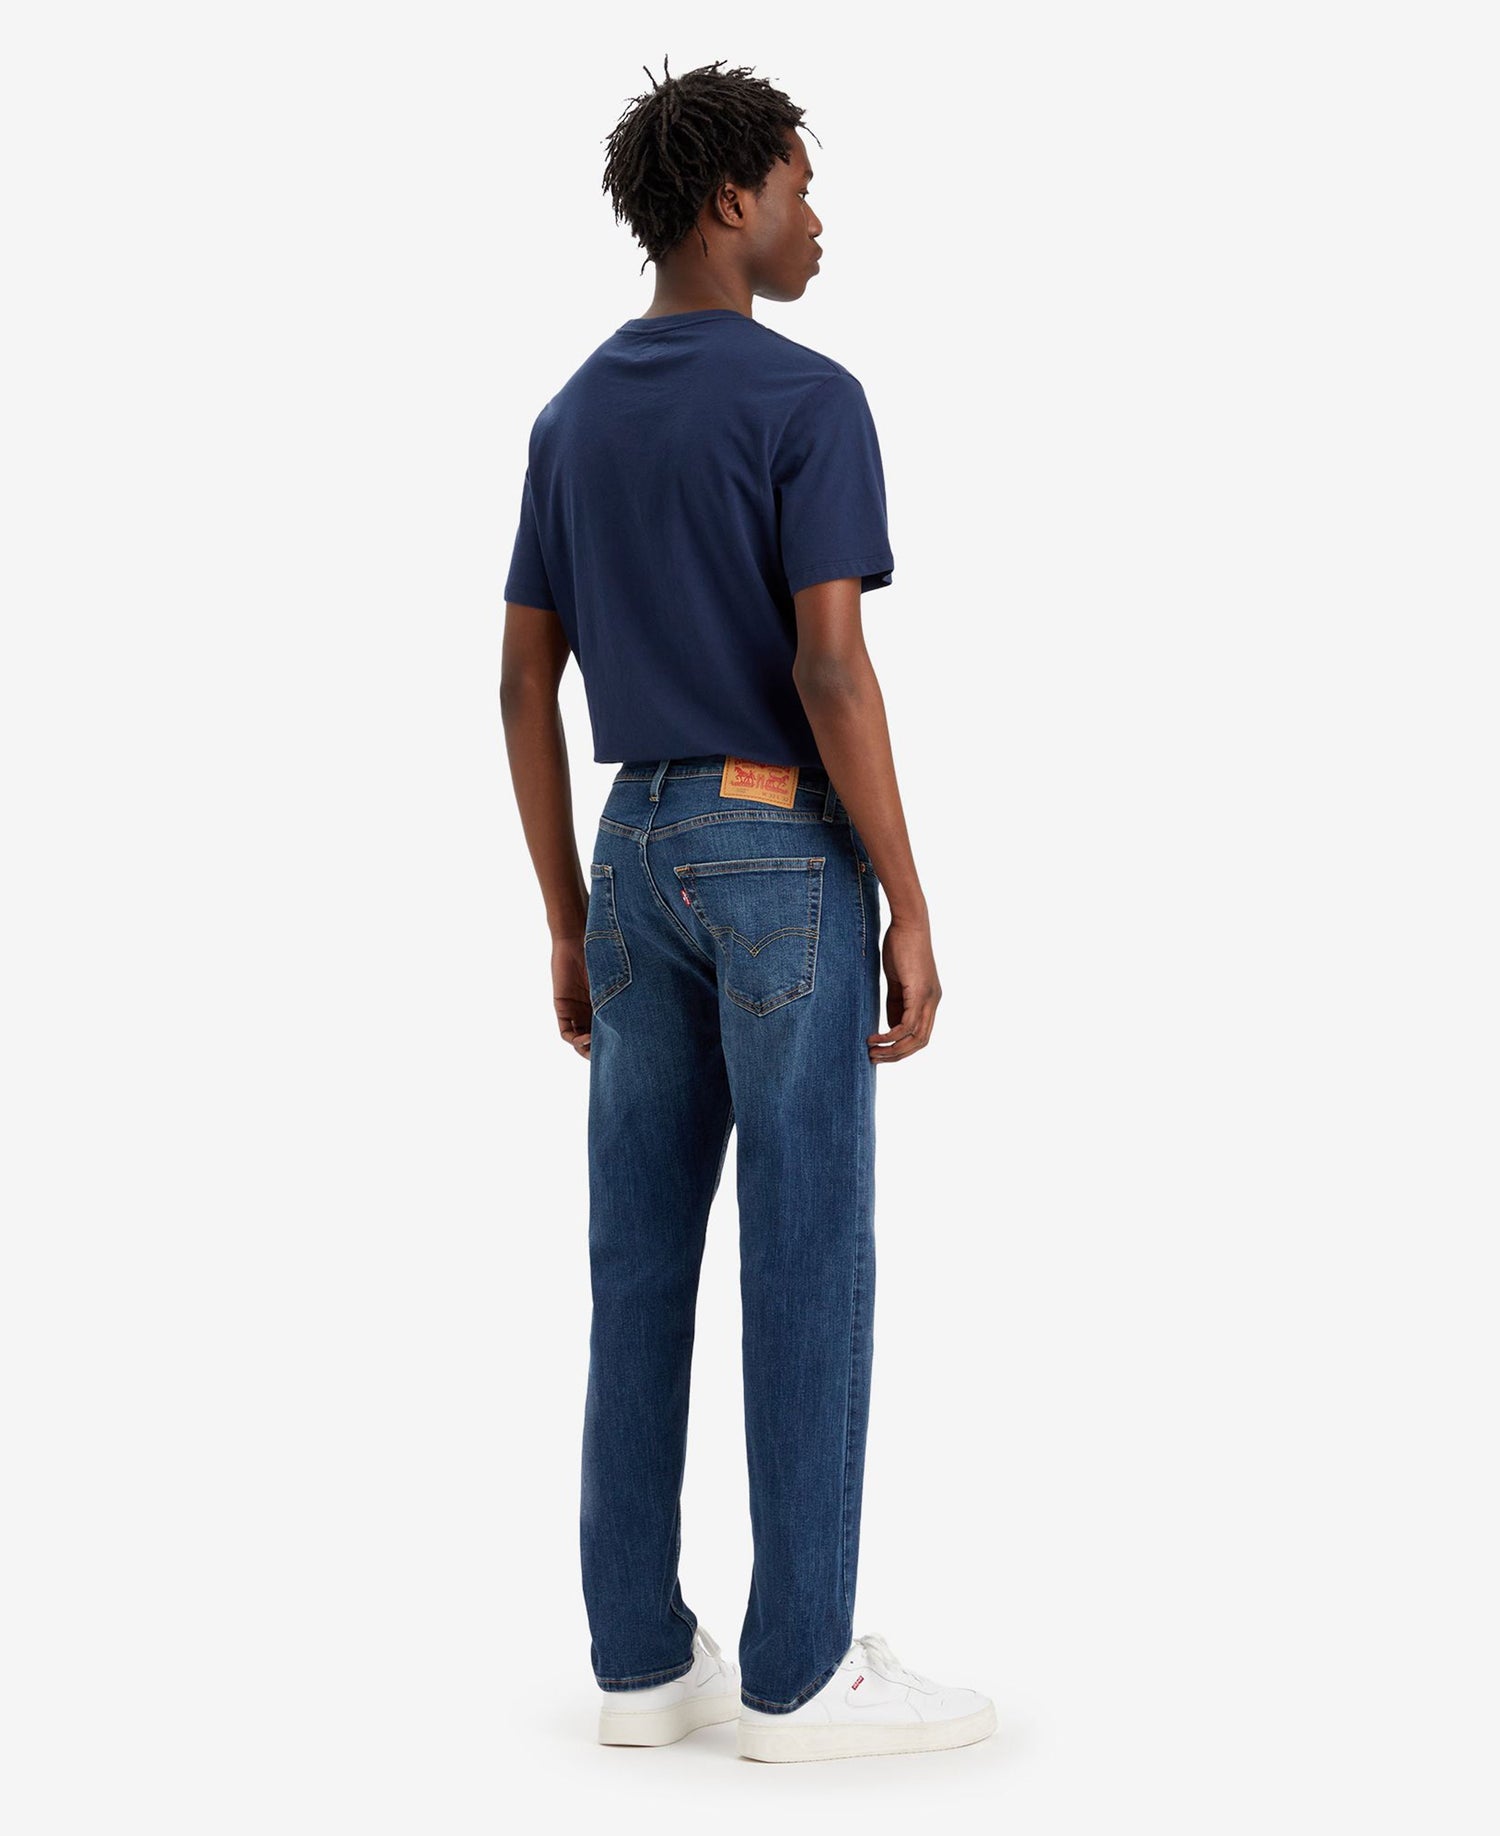 502® Taper Jeans - Dark Indigo Worn In